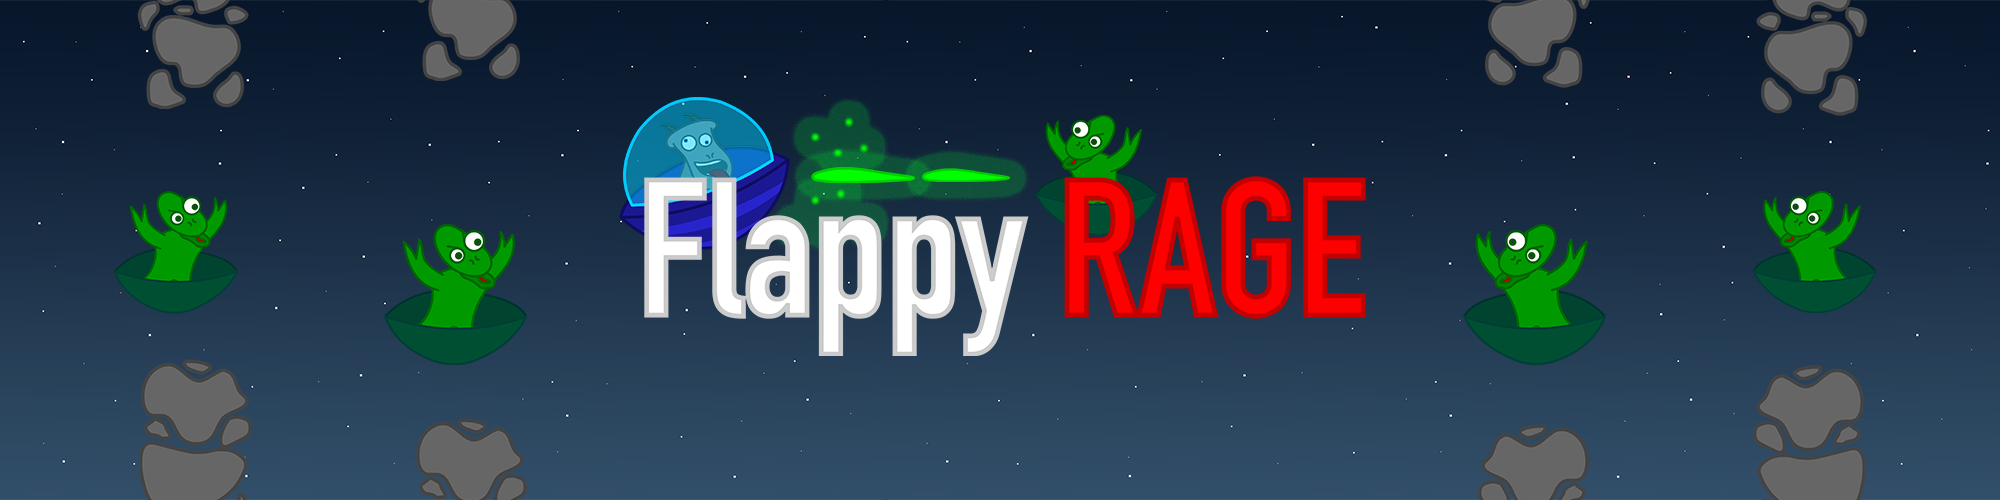 Flappy RAGE